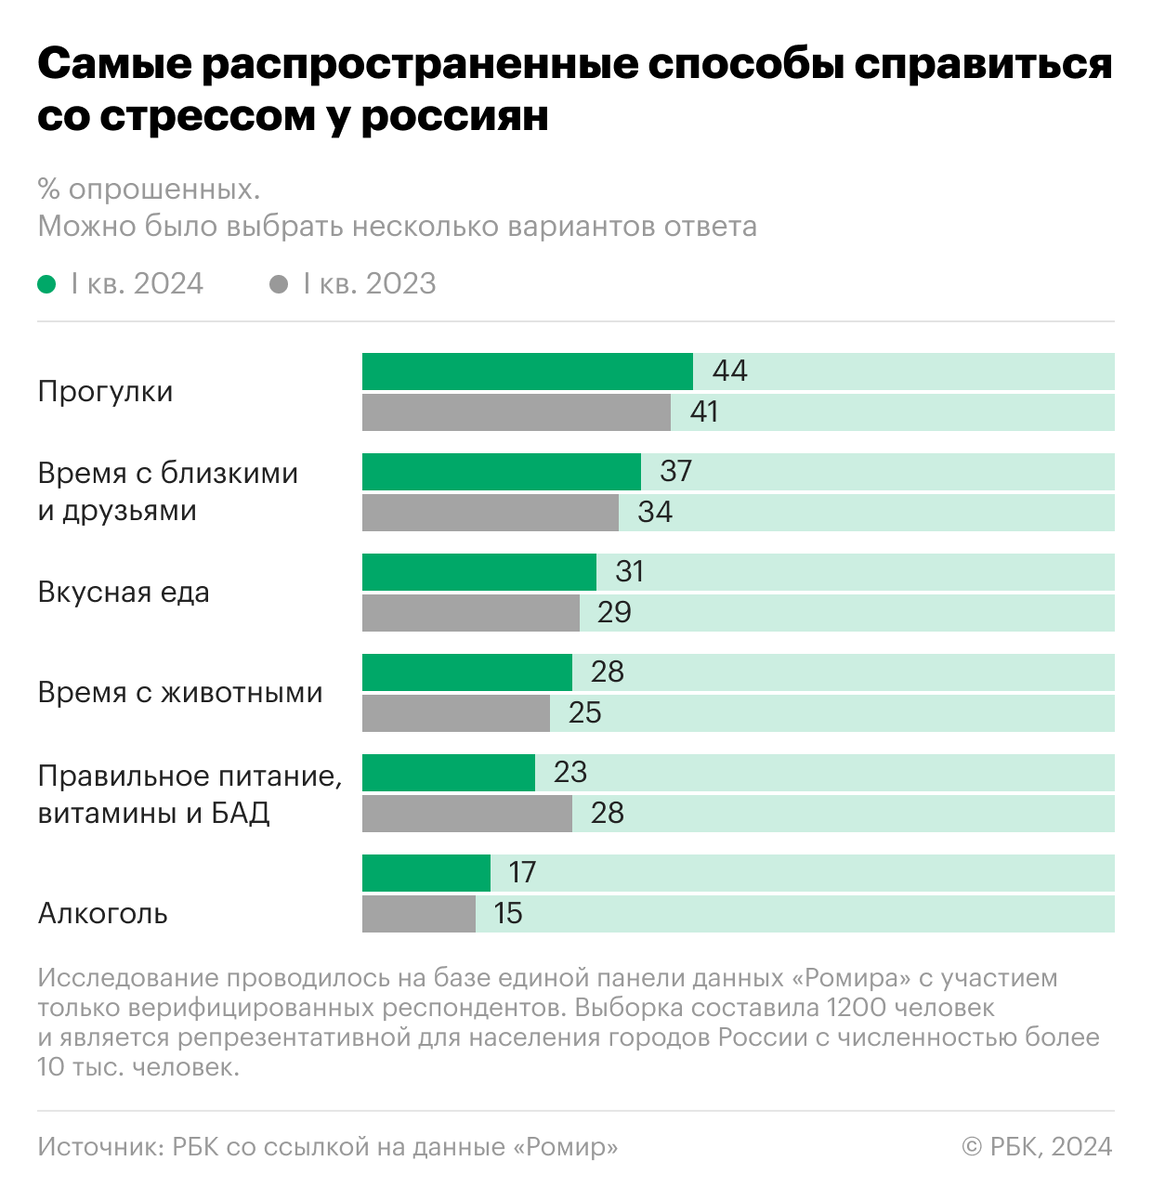 Согласно исследованию компании «Ромир», россияне прибегают к алкоголю как к средству для снятия стресса.